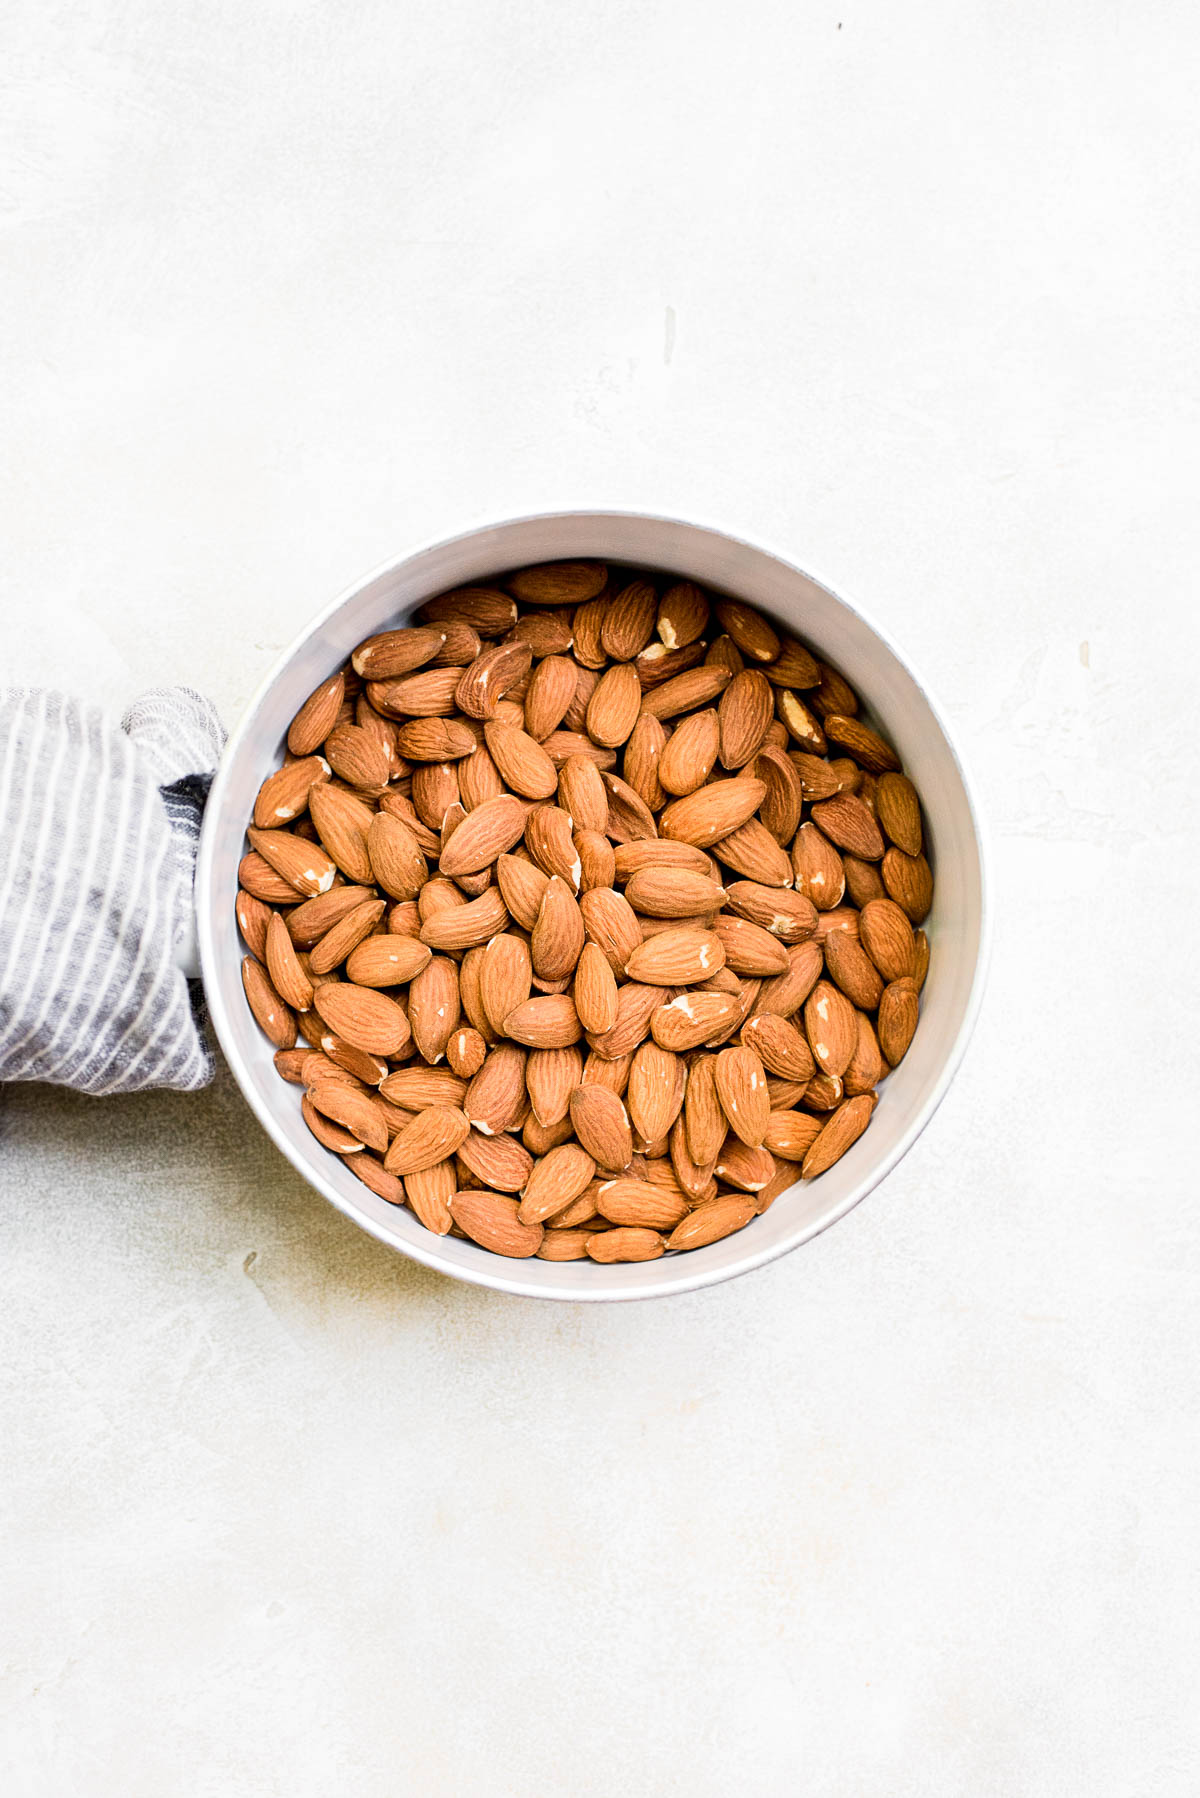 bowl full of almonds